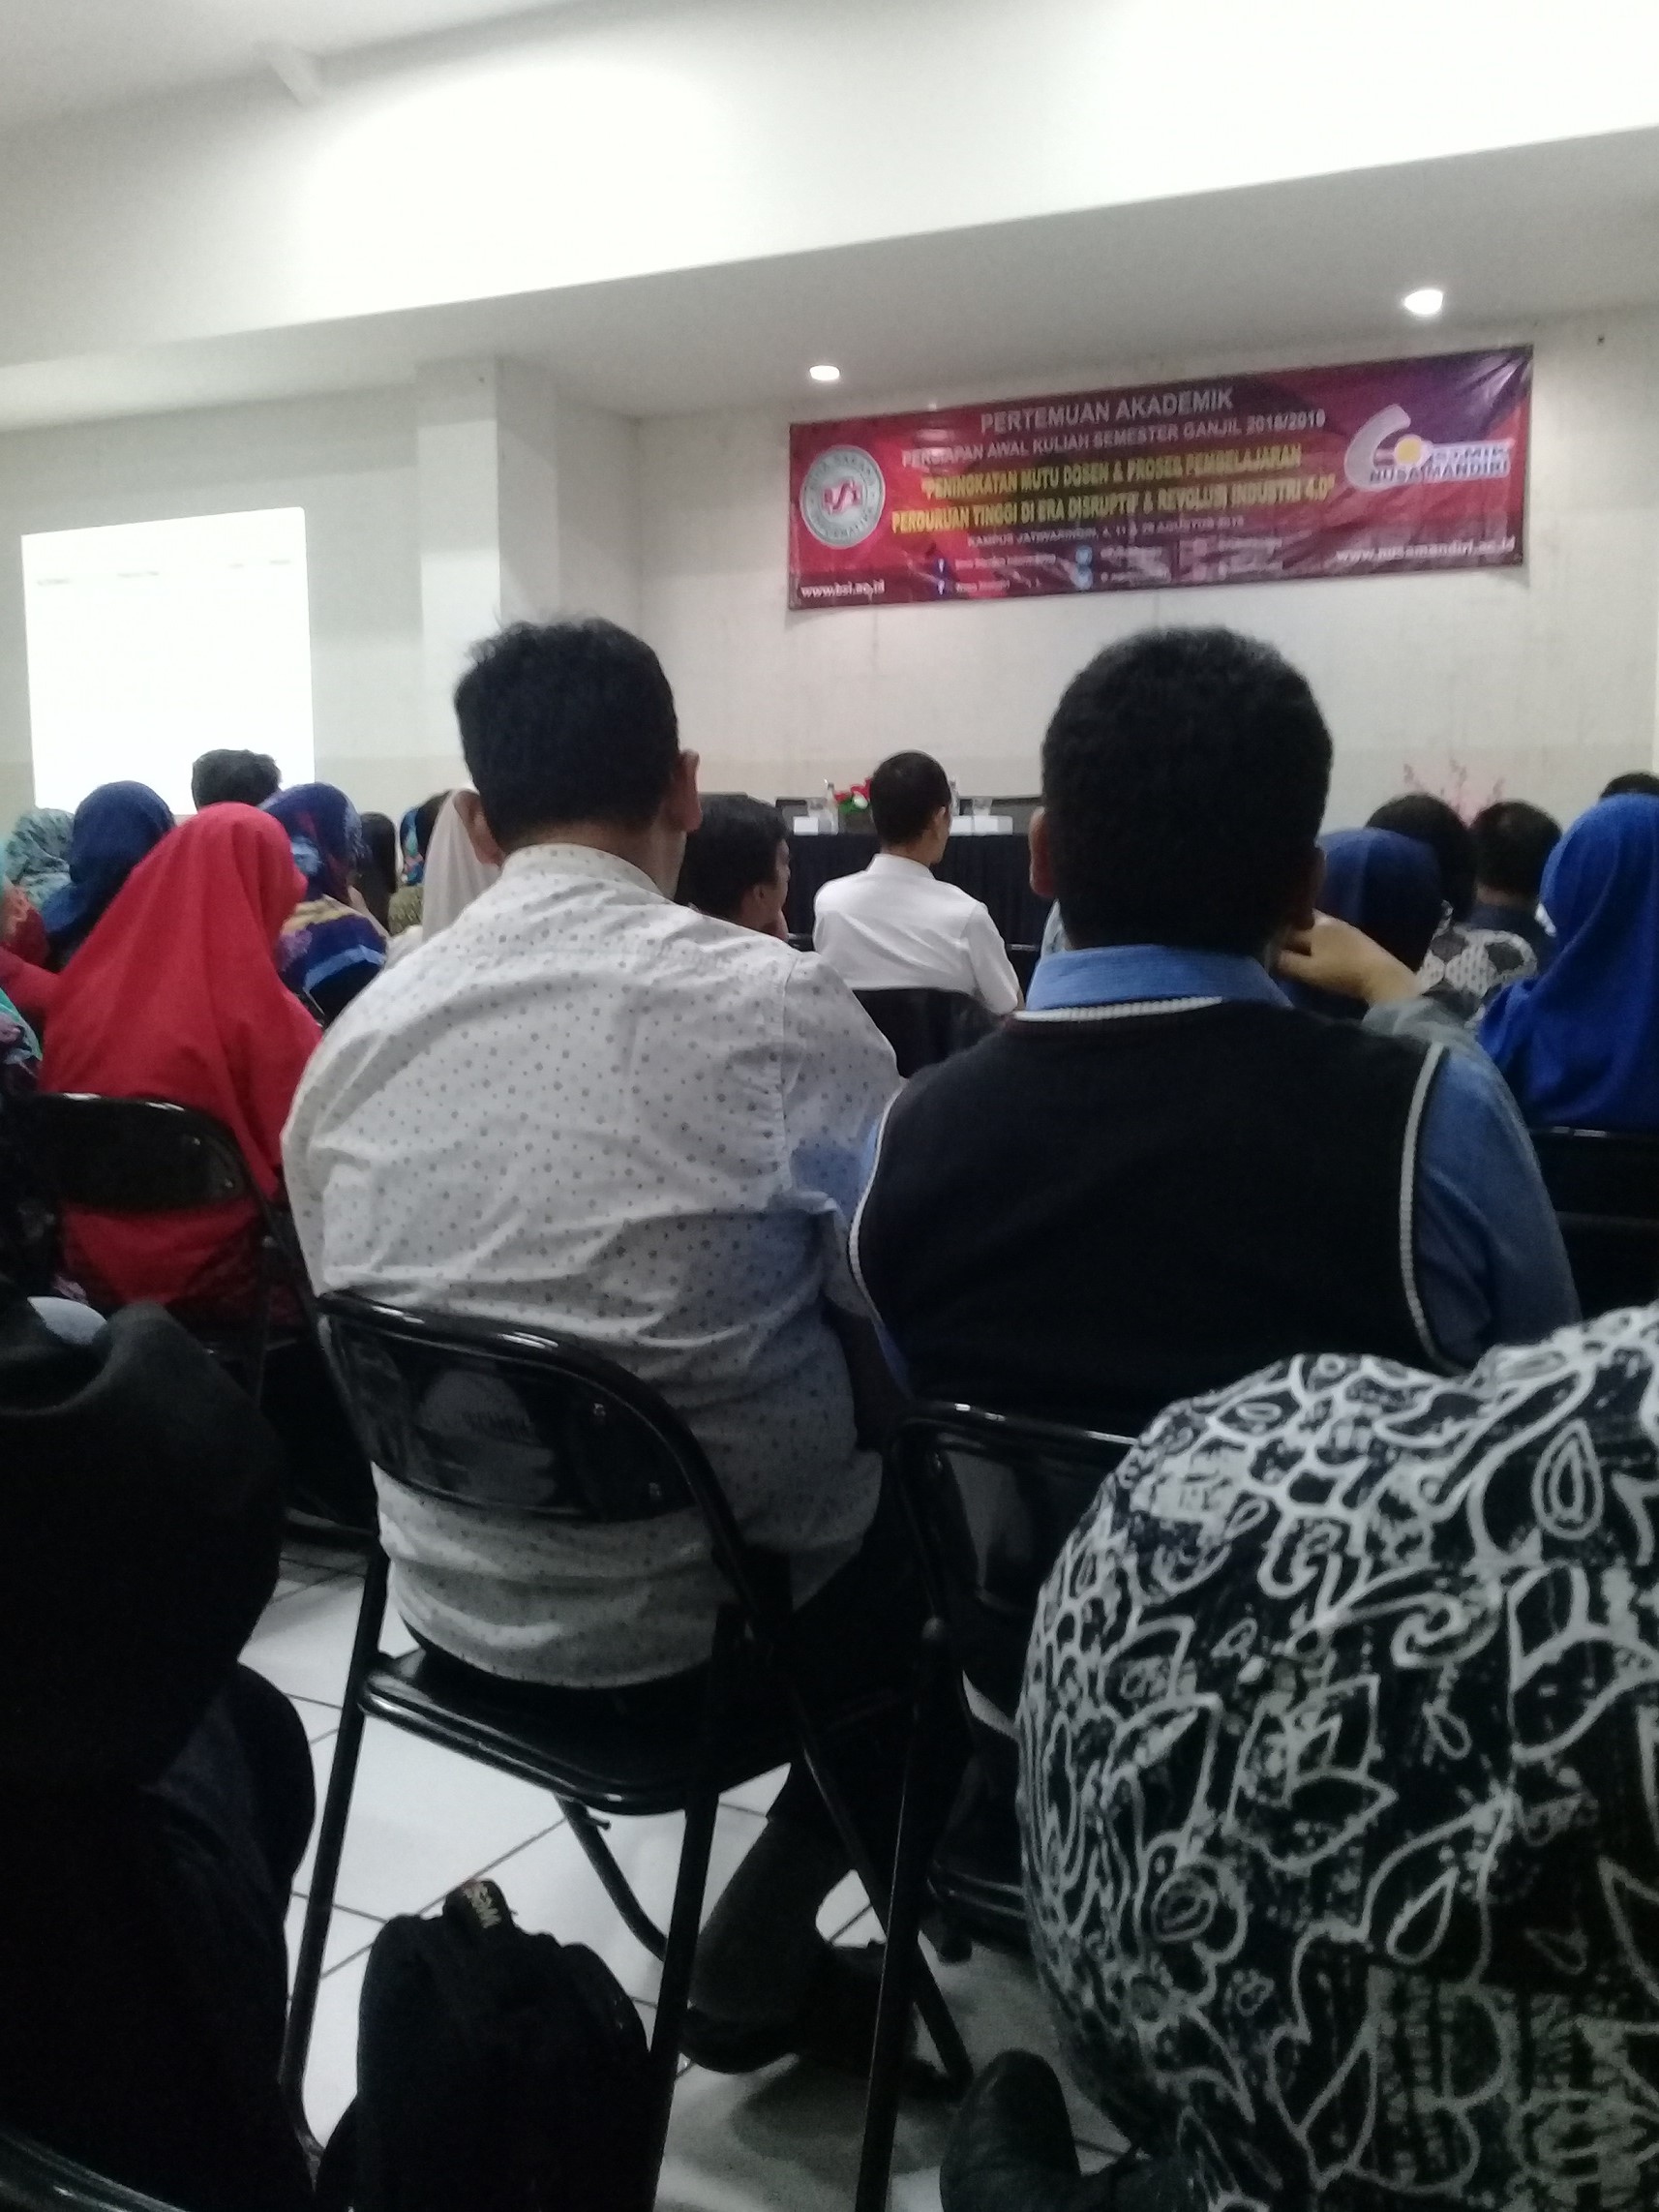 Pertemuan Akademik Dosen BSI GROUP: Persiapan Awal Perkuliahan Semester Ganjil 2018/2019 